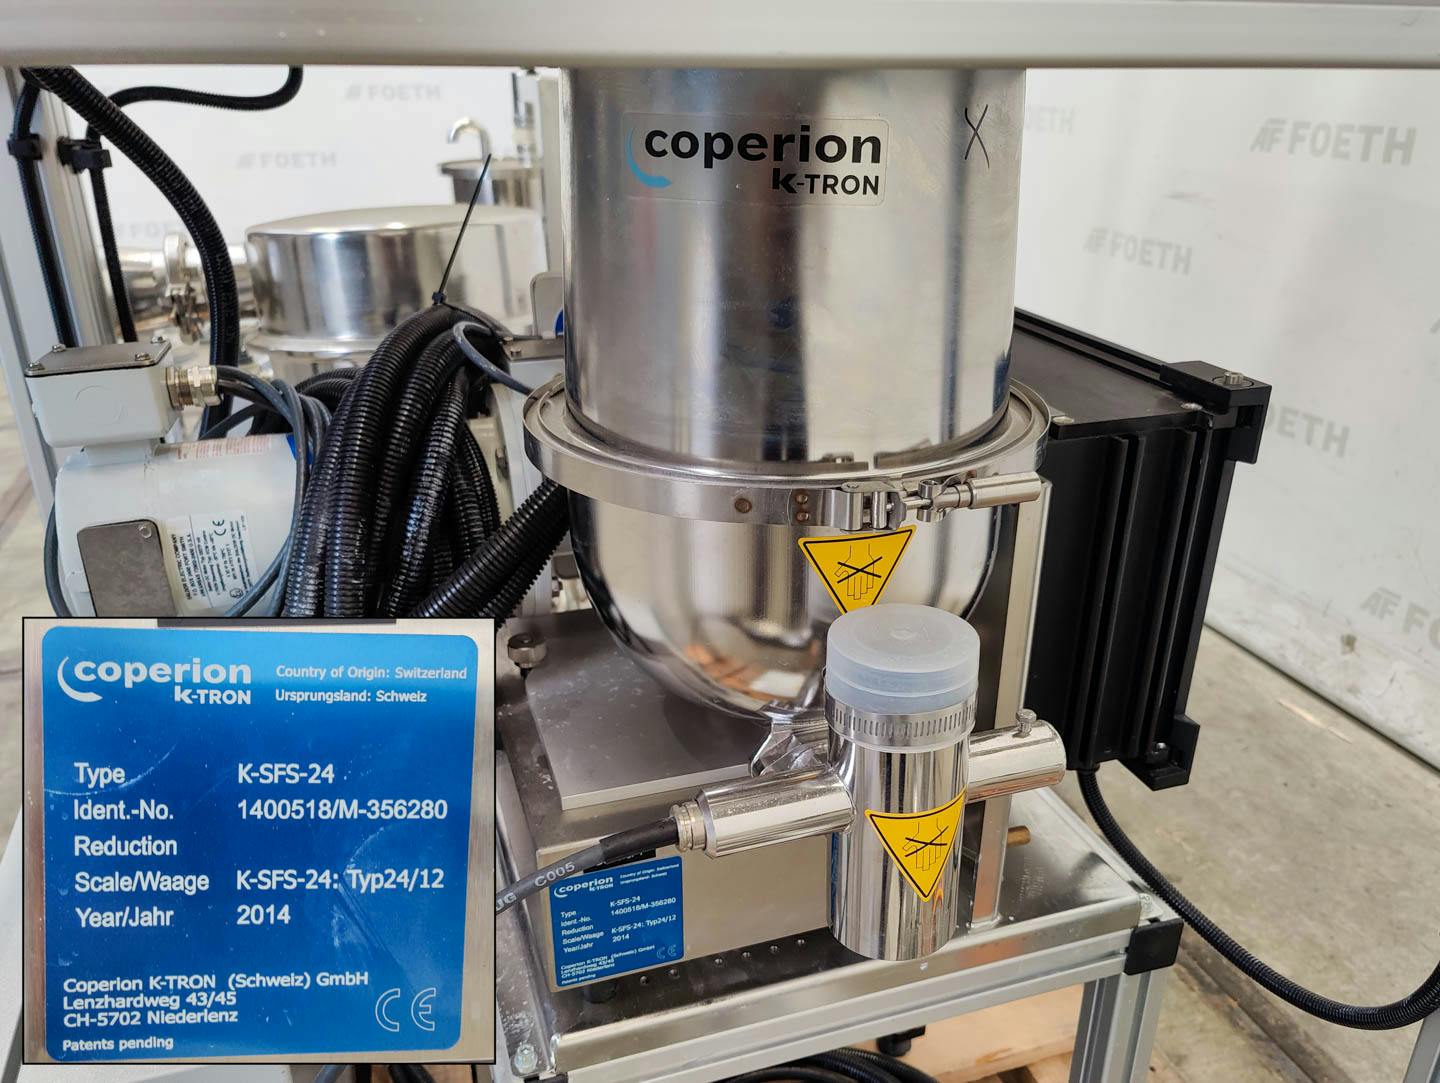 Coperion K2-MV-T35 (with high shear mixer) - Tornillo dosificador - image 13